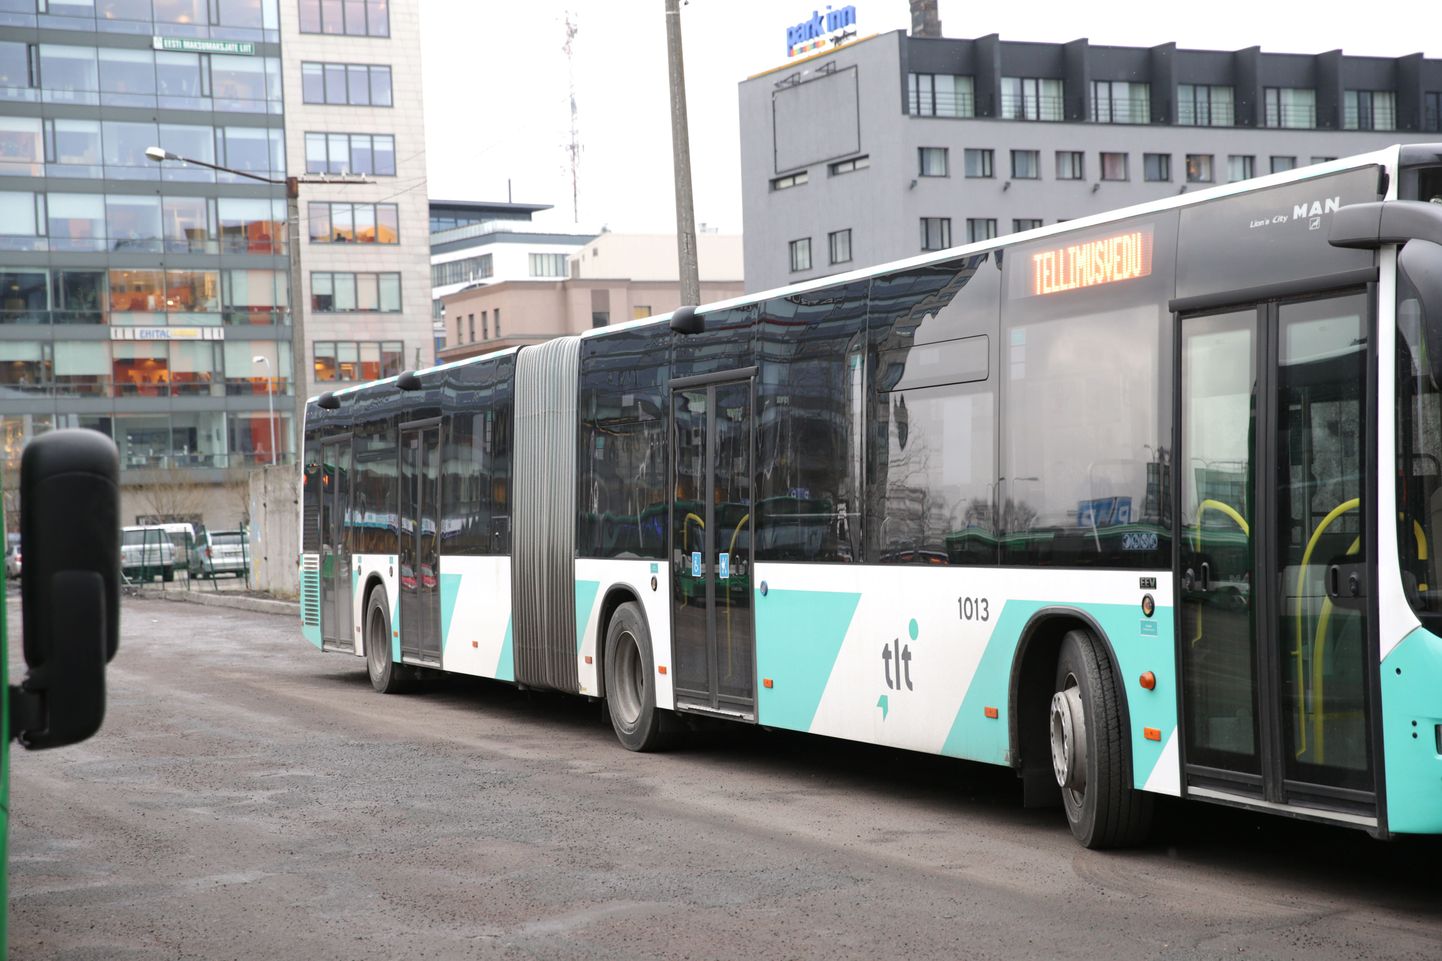 Tallinna ühistransport. Uued MAN City bussid uue Tallinna ühistranspordi ühtse kujundusega. Sellist hakkavad järgima ka uued trammid.